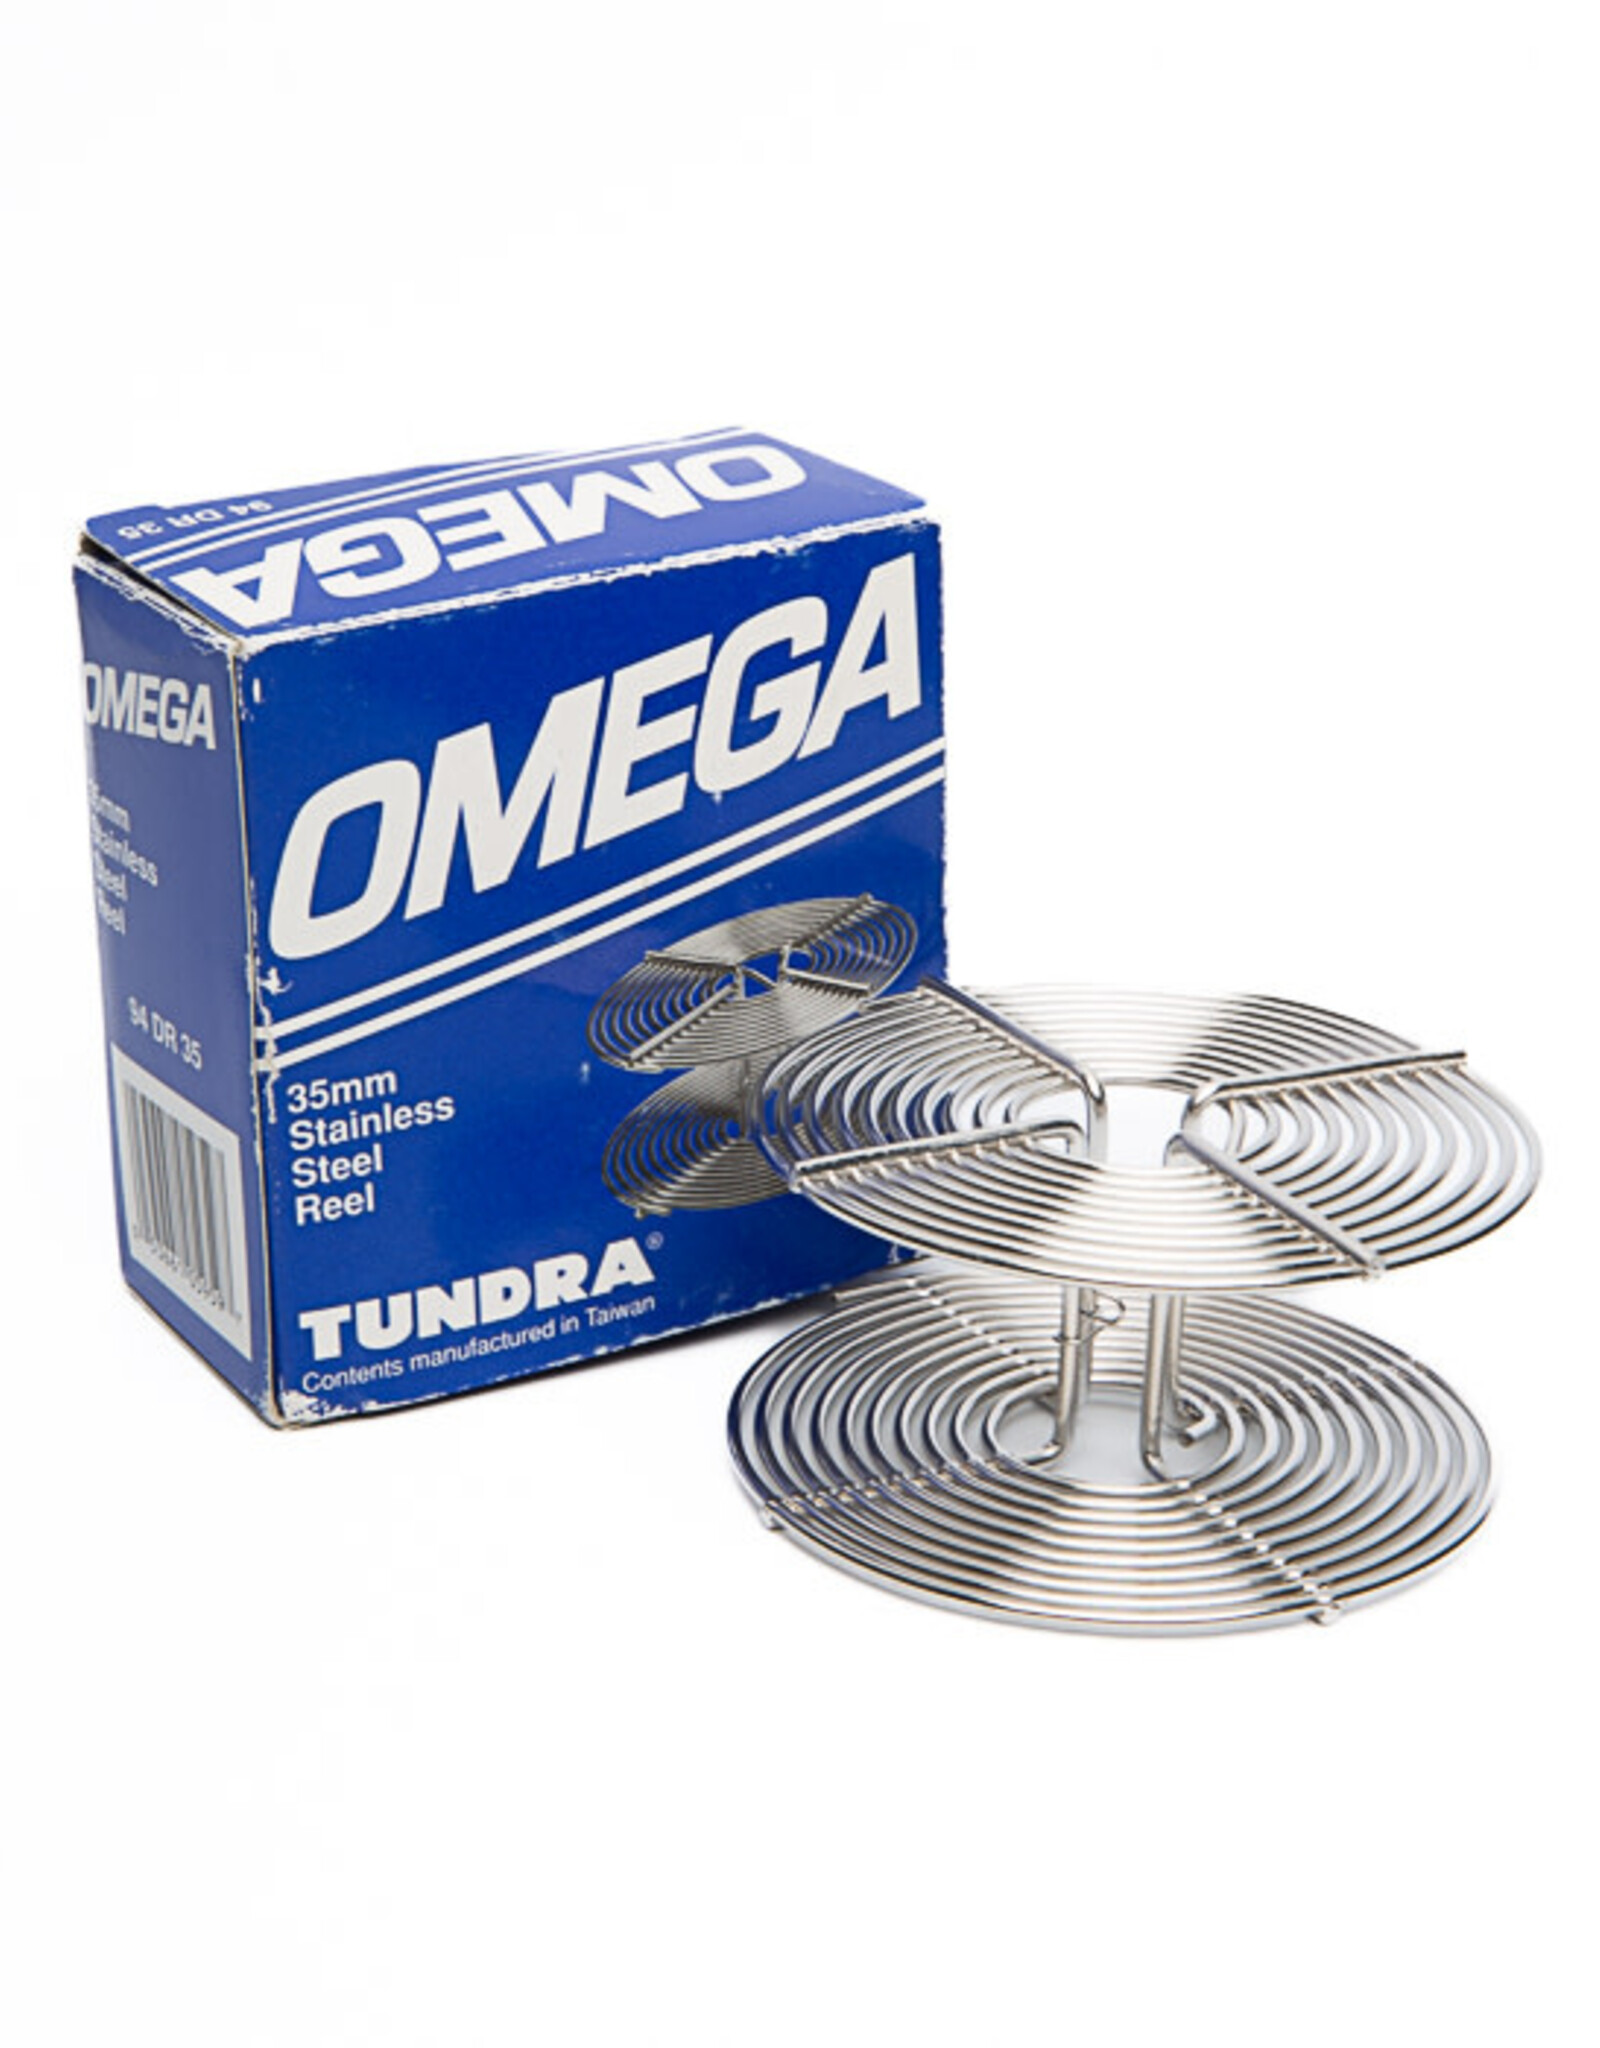 Kalt Omega Tundra Stainless Steel Reel for Developing 35mm Film